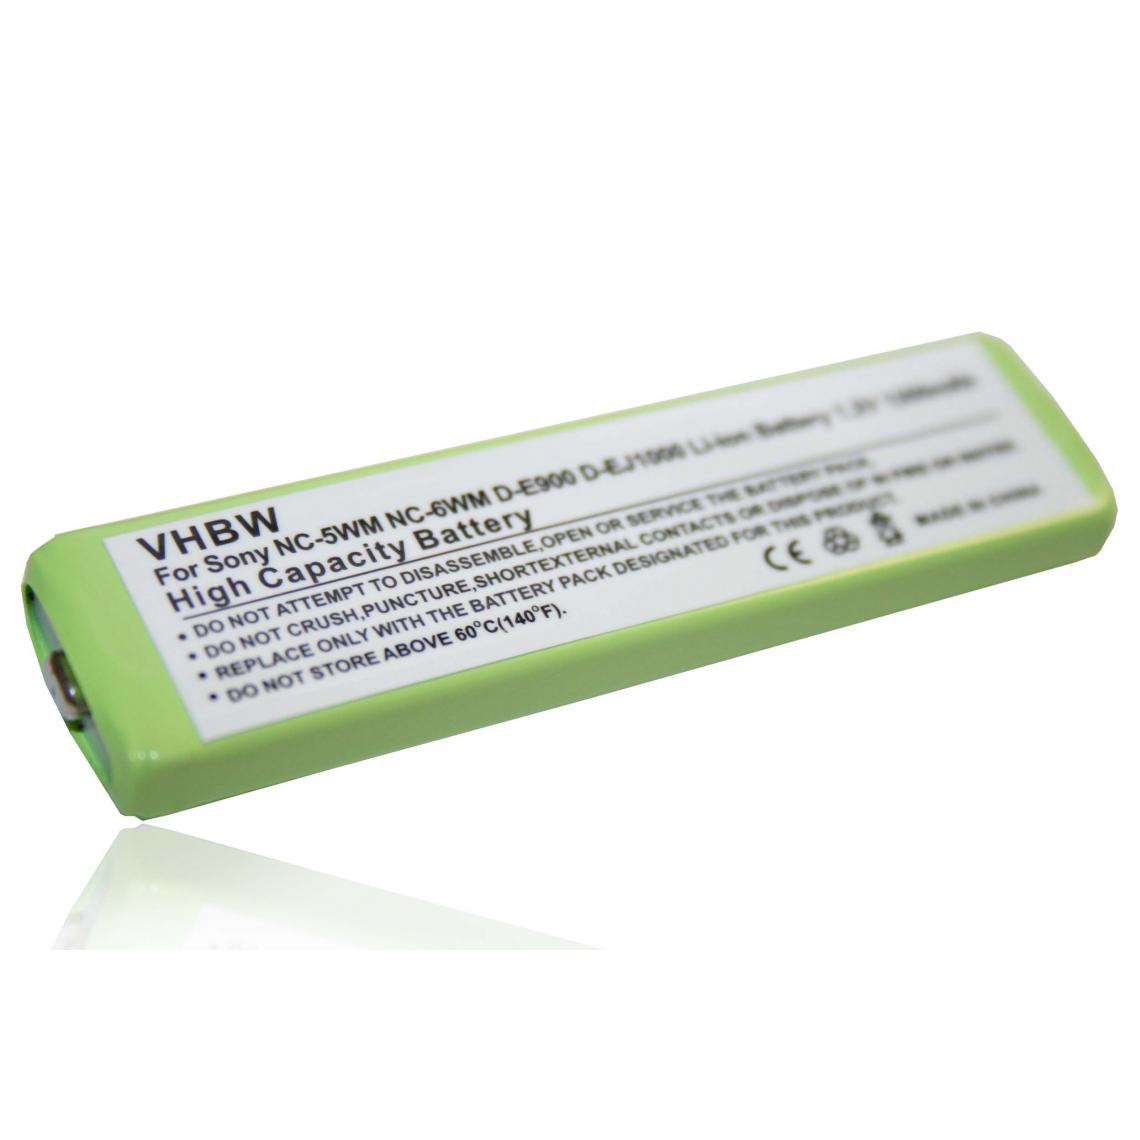 Vhbw - vhbw Batterie compatible avec Panasonic SJ-MW3, SJ-SW90MD, SJ-SW9MD, SL-CT700, SL-CT 700 lecteur MP3 baladeur MP3 Player (1200mAh, 1,2V, NiMH) - Batteries électroniques